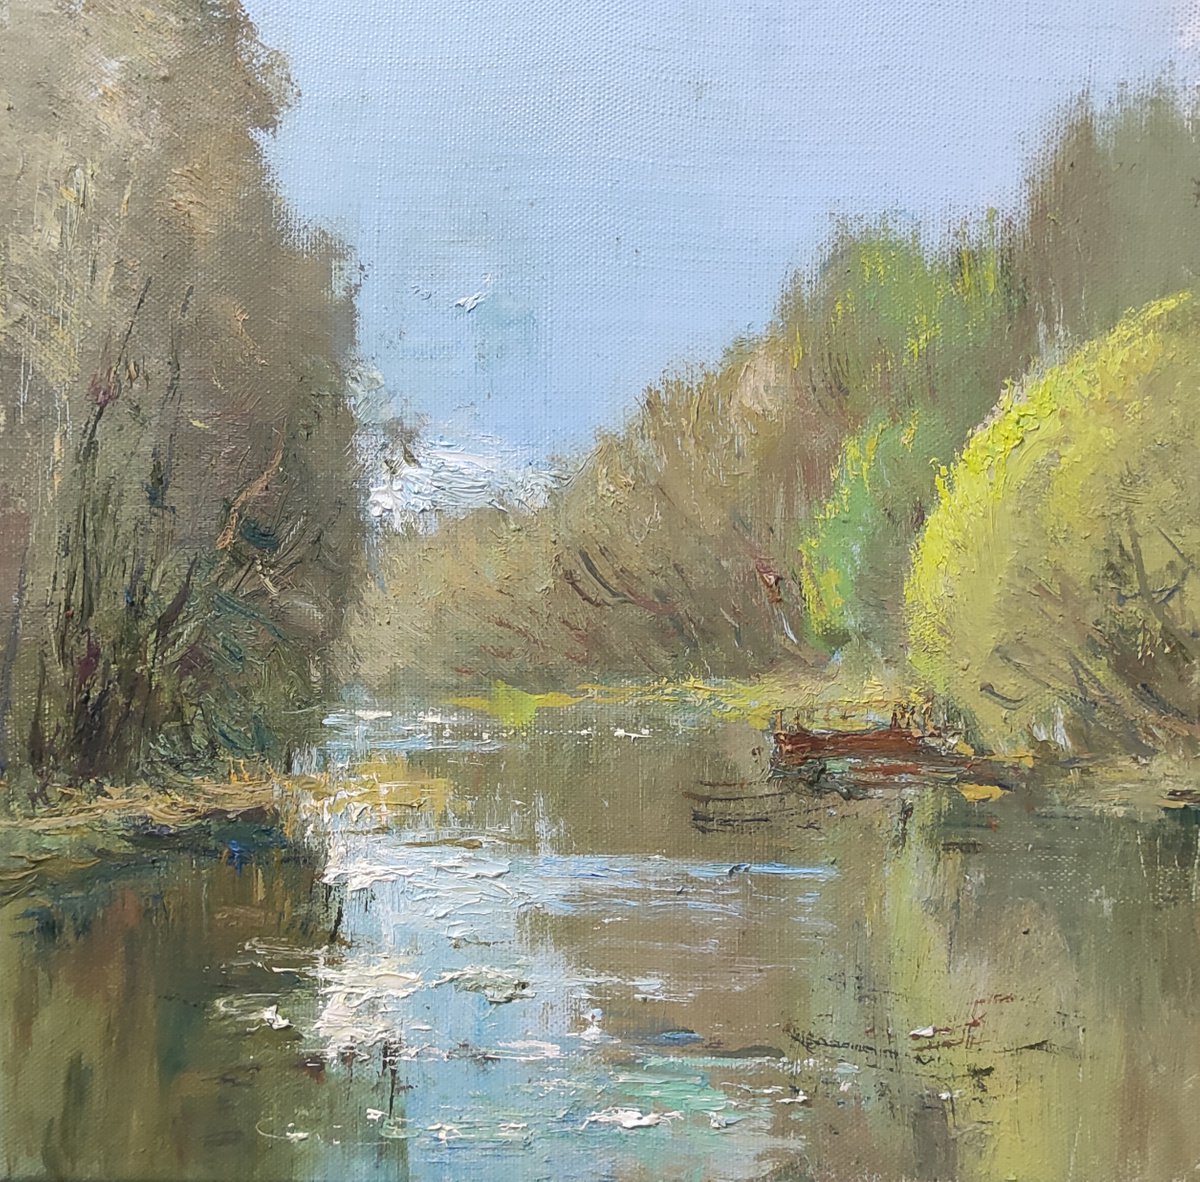 River by Dmitrii Ermolov